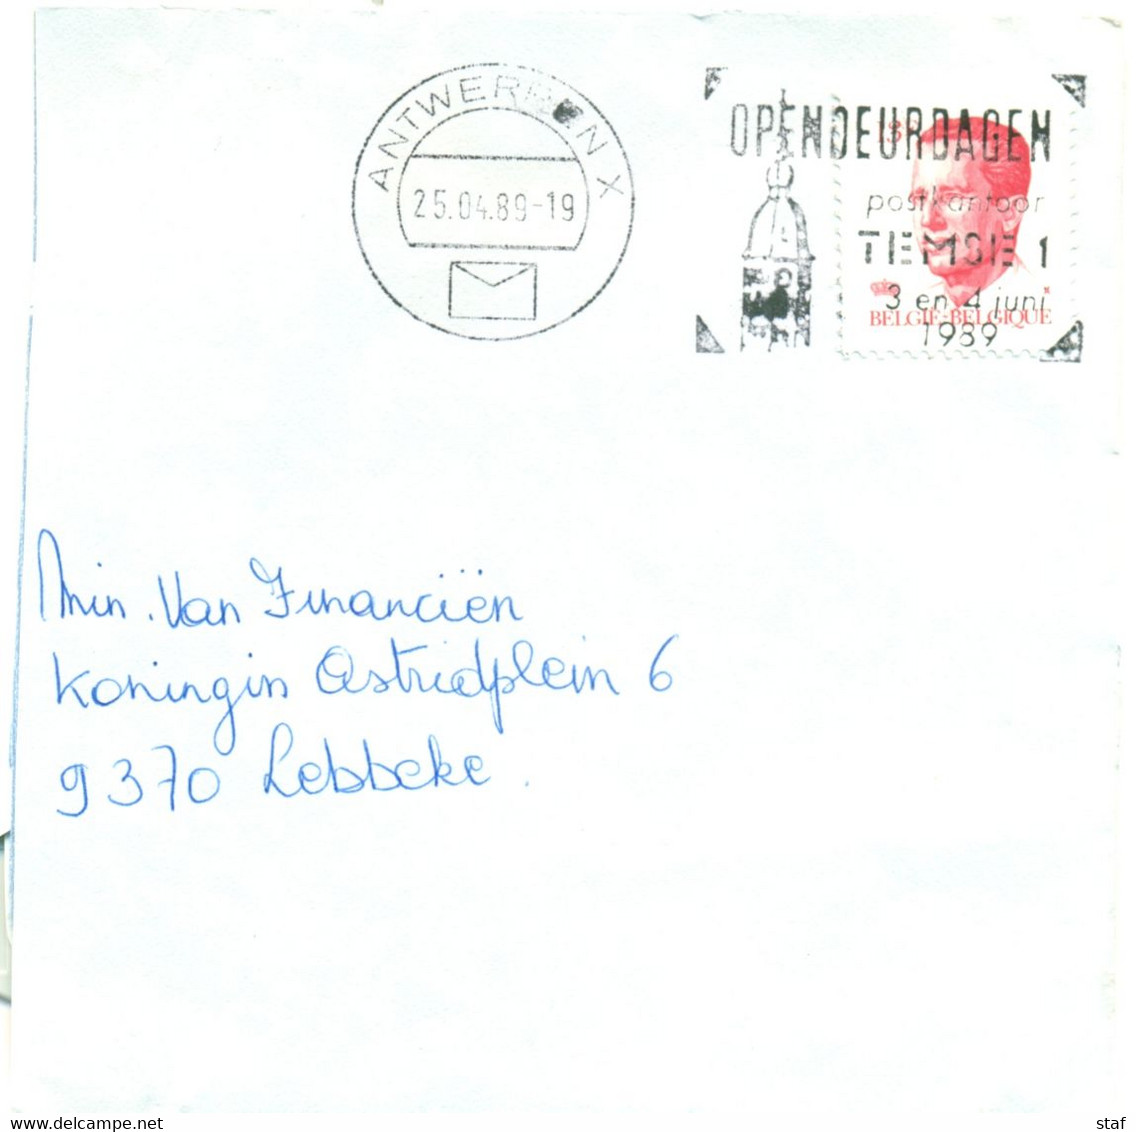 Open Deur Dagen Postkantoor Temse 1 - 3 En 4 Juni 1989 - Flammes